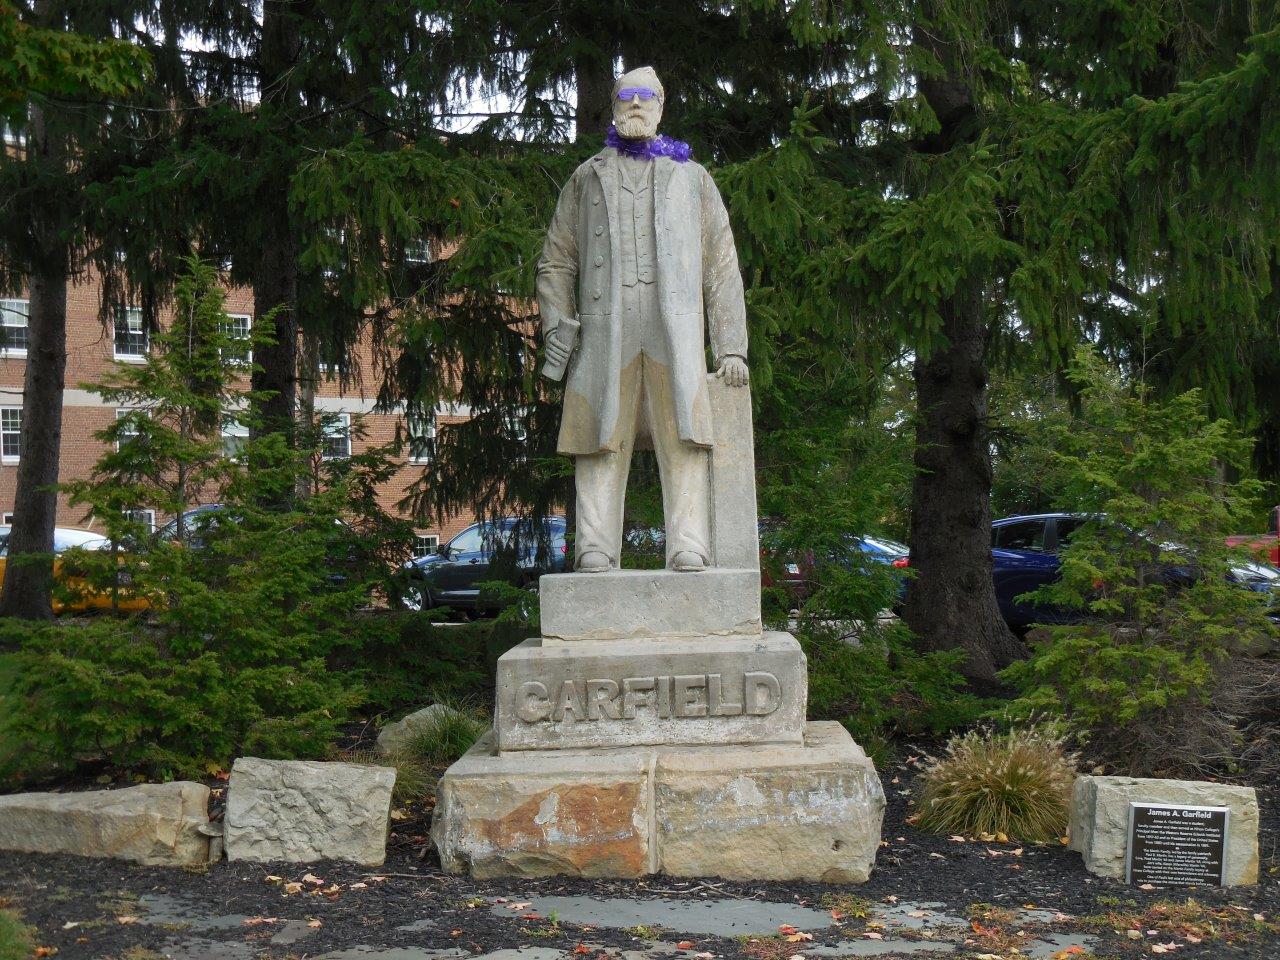 James Garfield statue in Hiram, Ohio